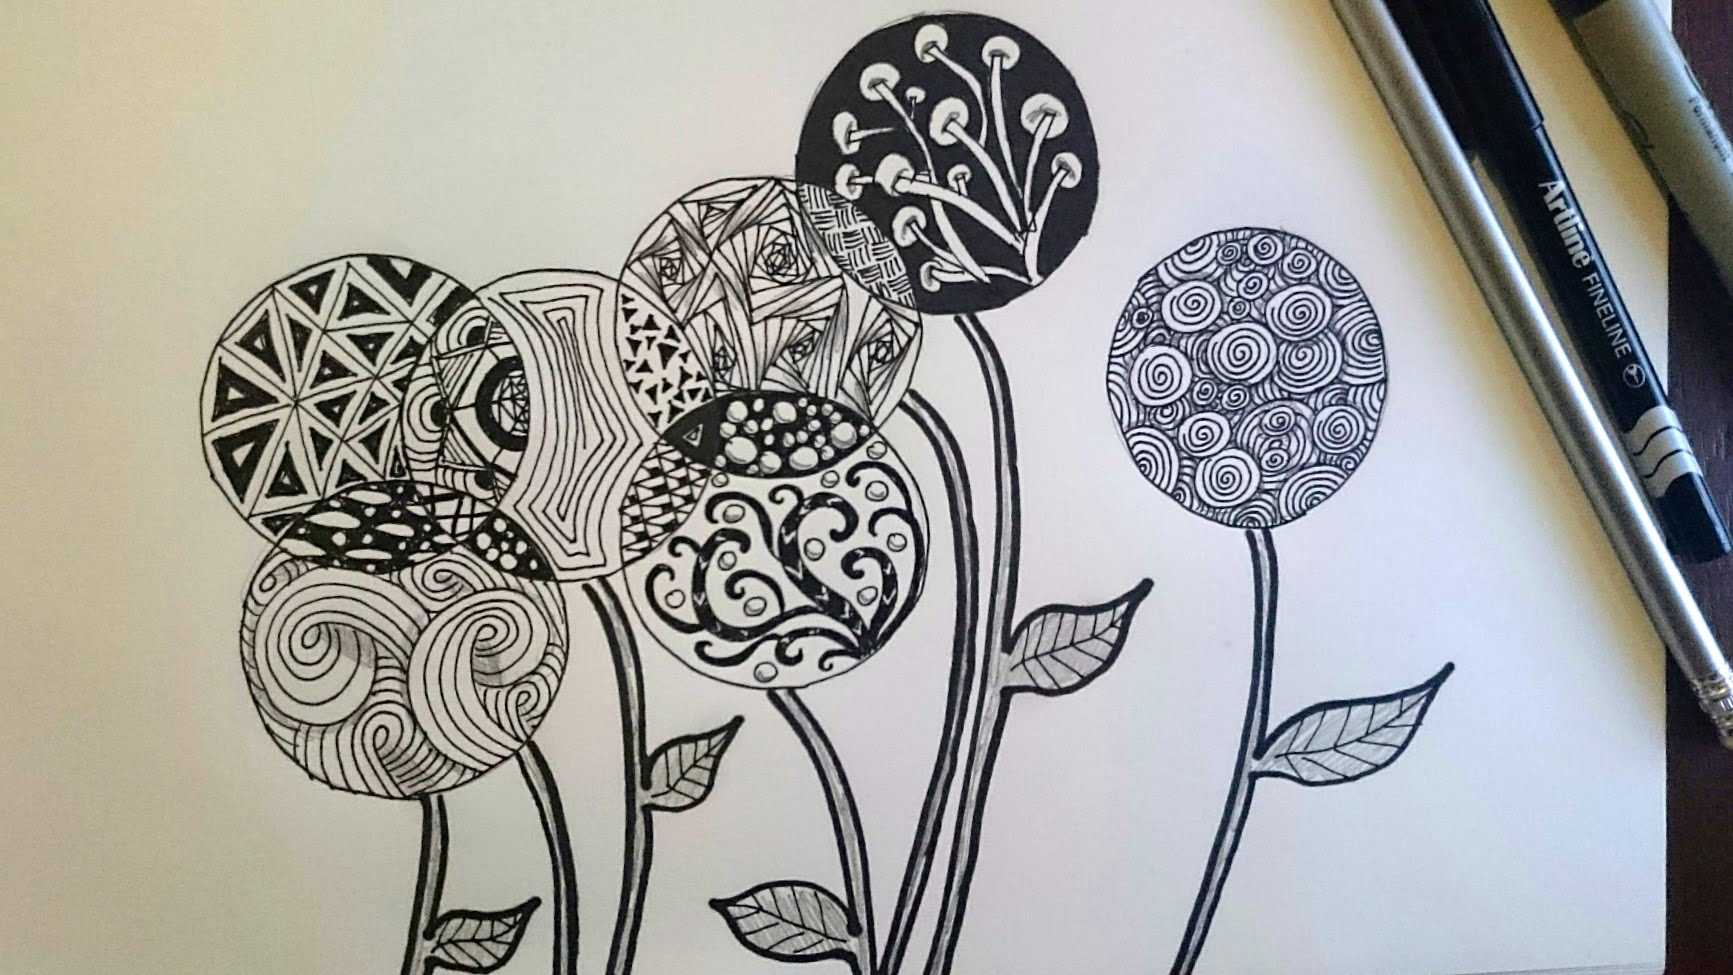 Рисунки черной гелевой ручкой для срисовки – как рисовать узоры зентангл. рисуем зентангл-животных своими руками поэтапно уроки рисования для начинающих, мультики, раскраски.